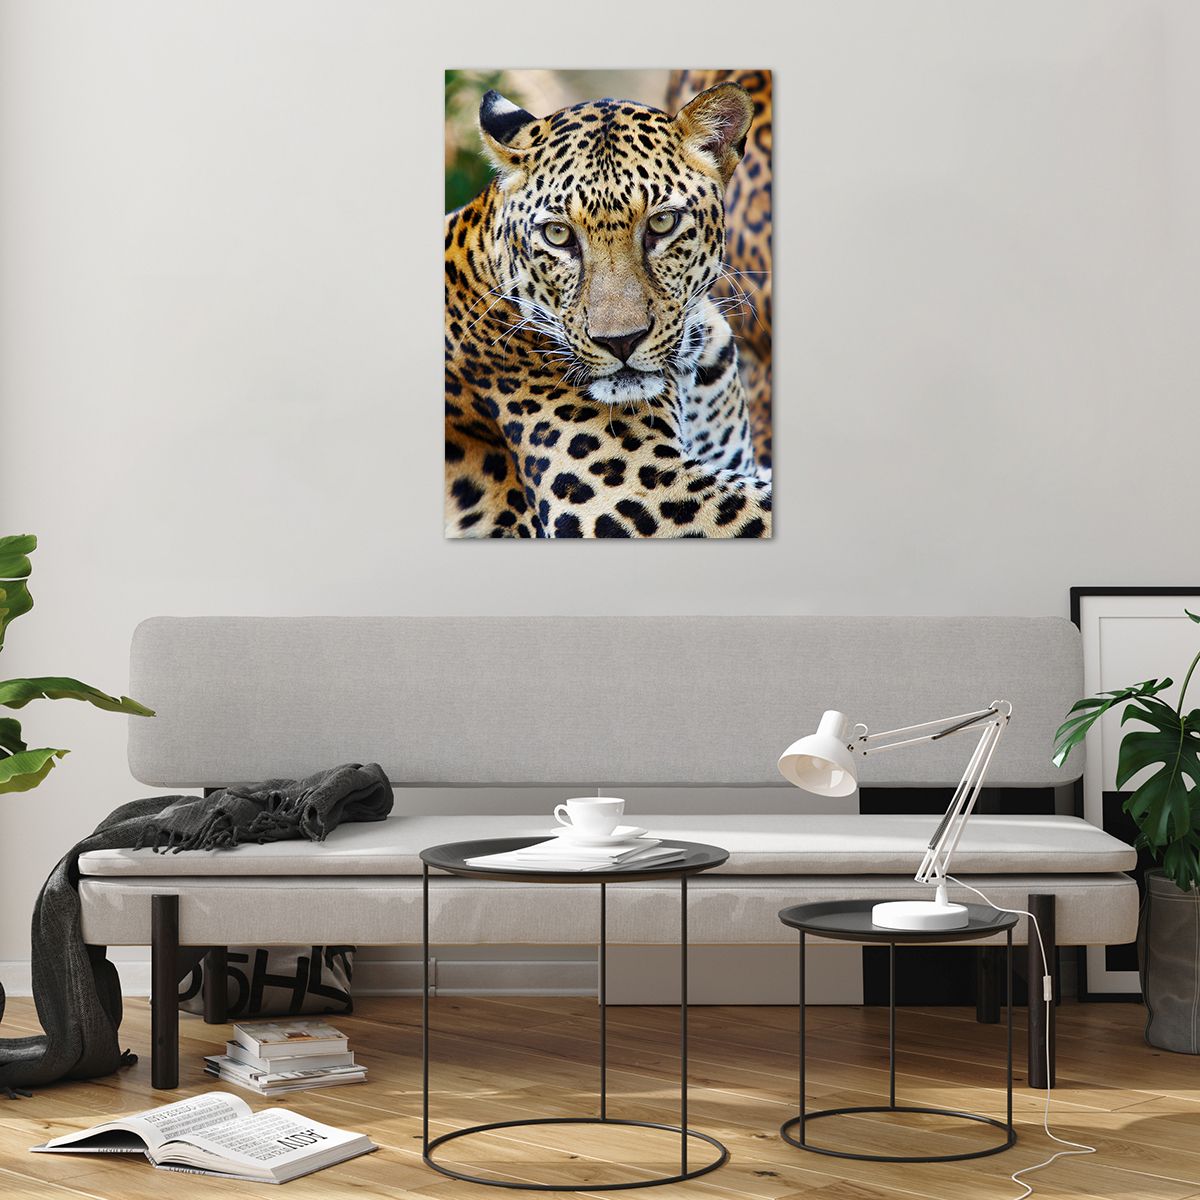 Bilder auf glas Tiere, Bilder auf glas Leopard, Bilder auf glas Afrika, Bilder auf glas Urwald, Bilder auf glas Wildes Tier